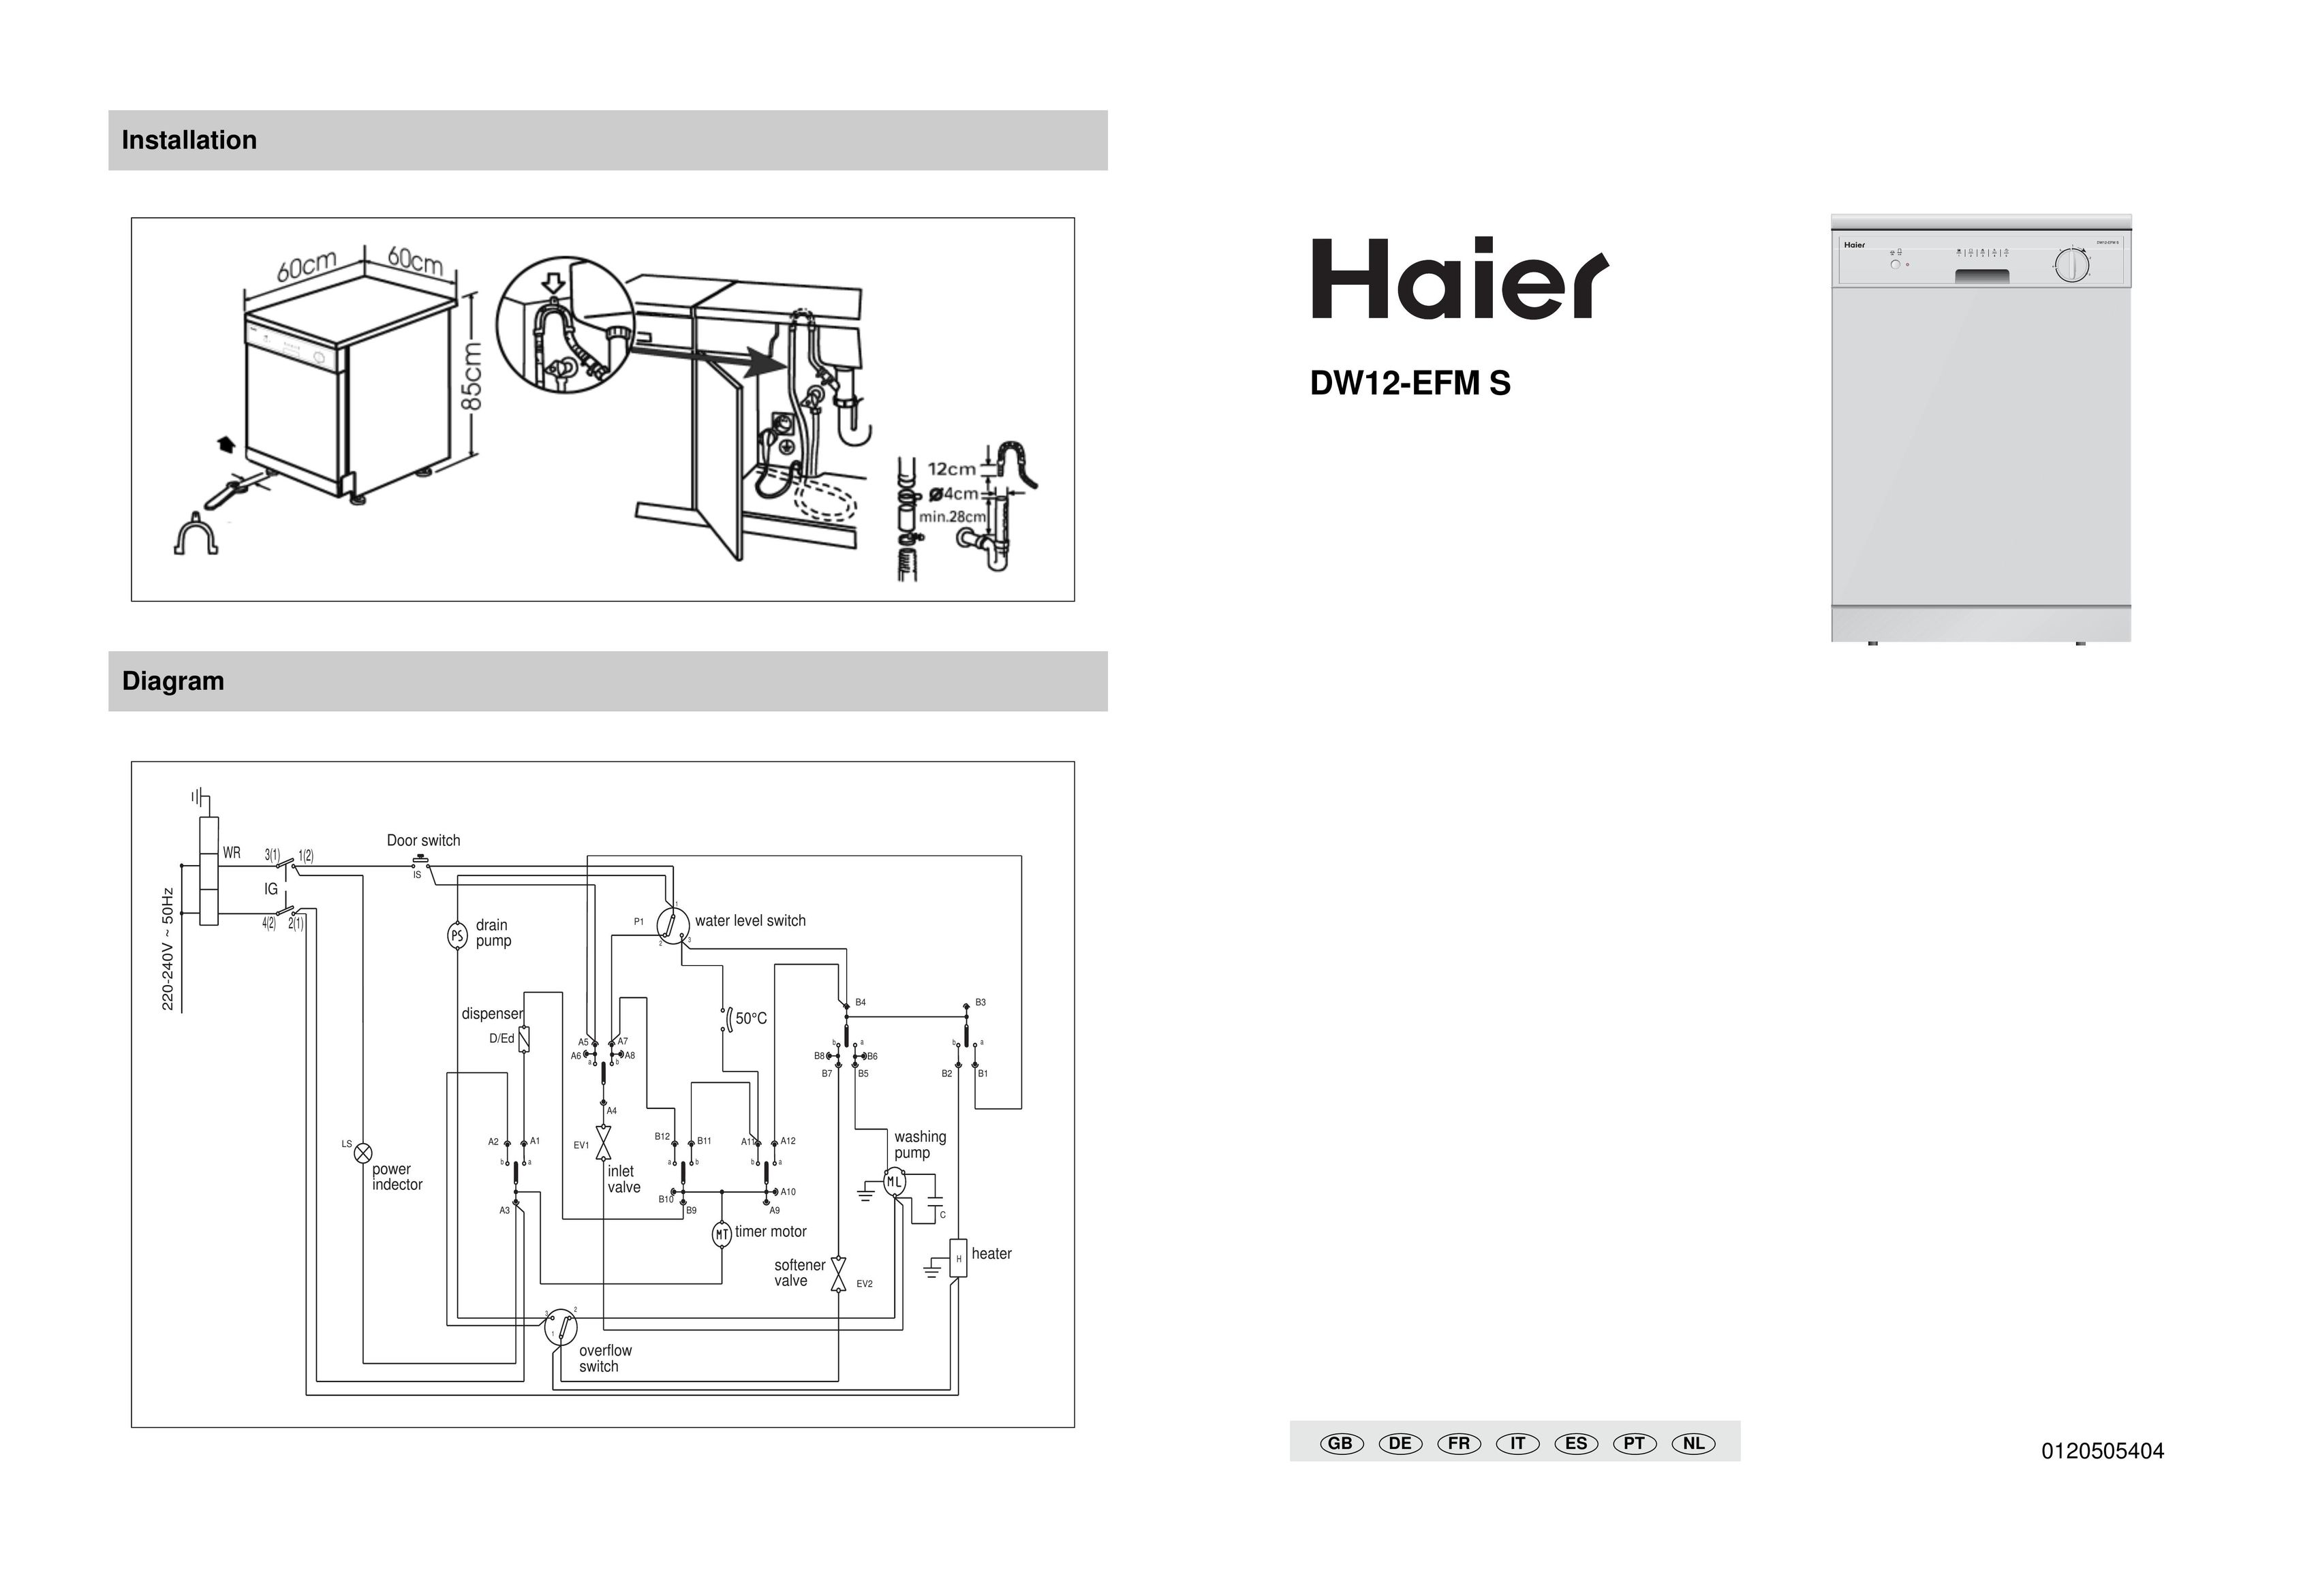 Haier DW12-EFM S Dishwasher User Manual